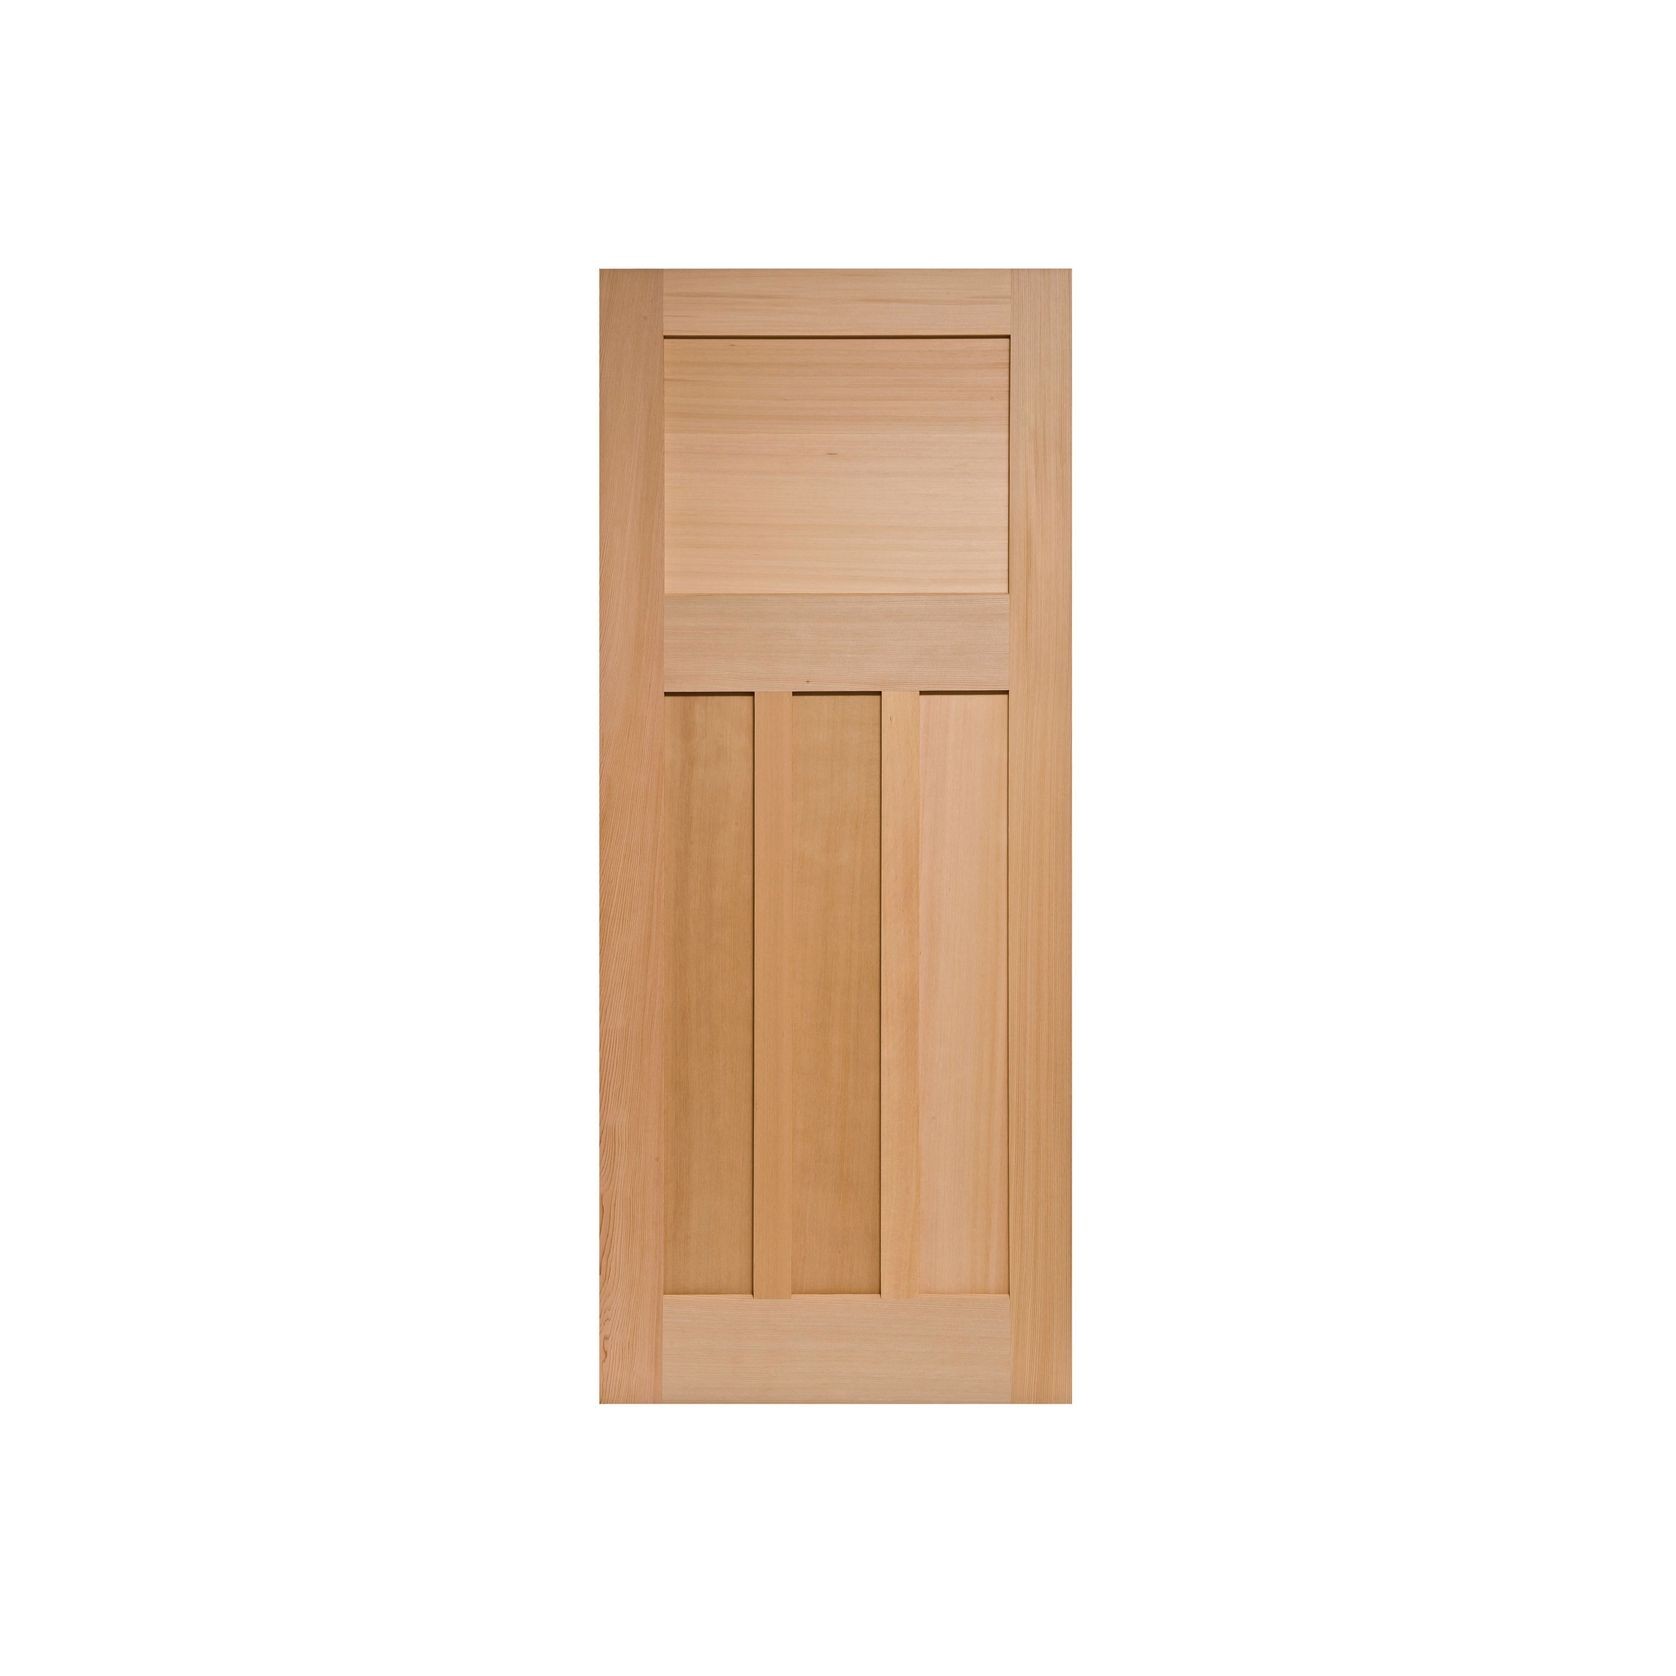 Bungalow 4 Solid Wood Door gallery detail image